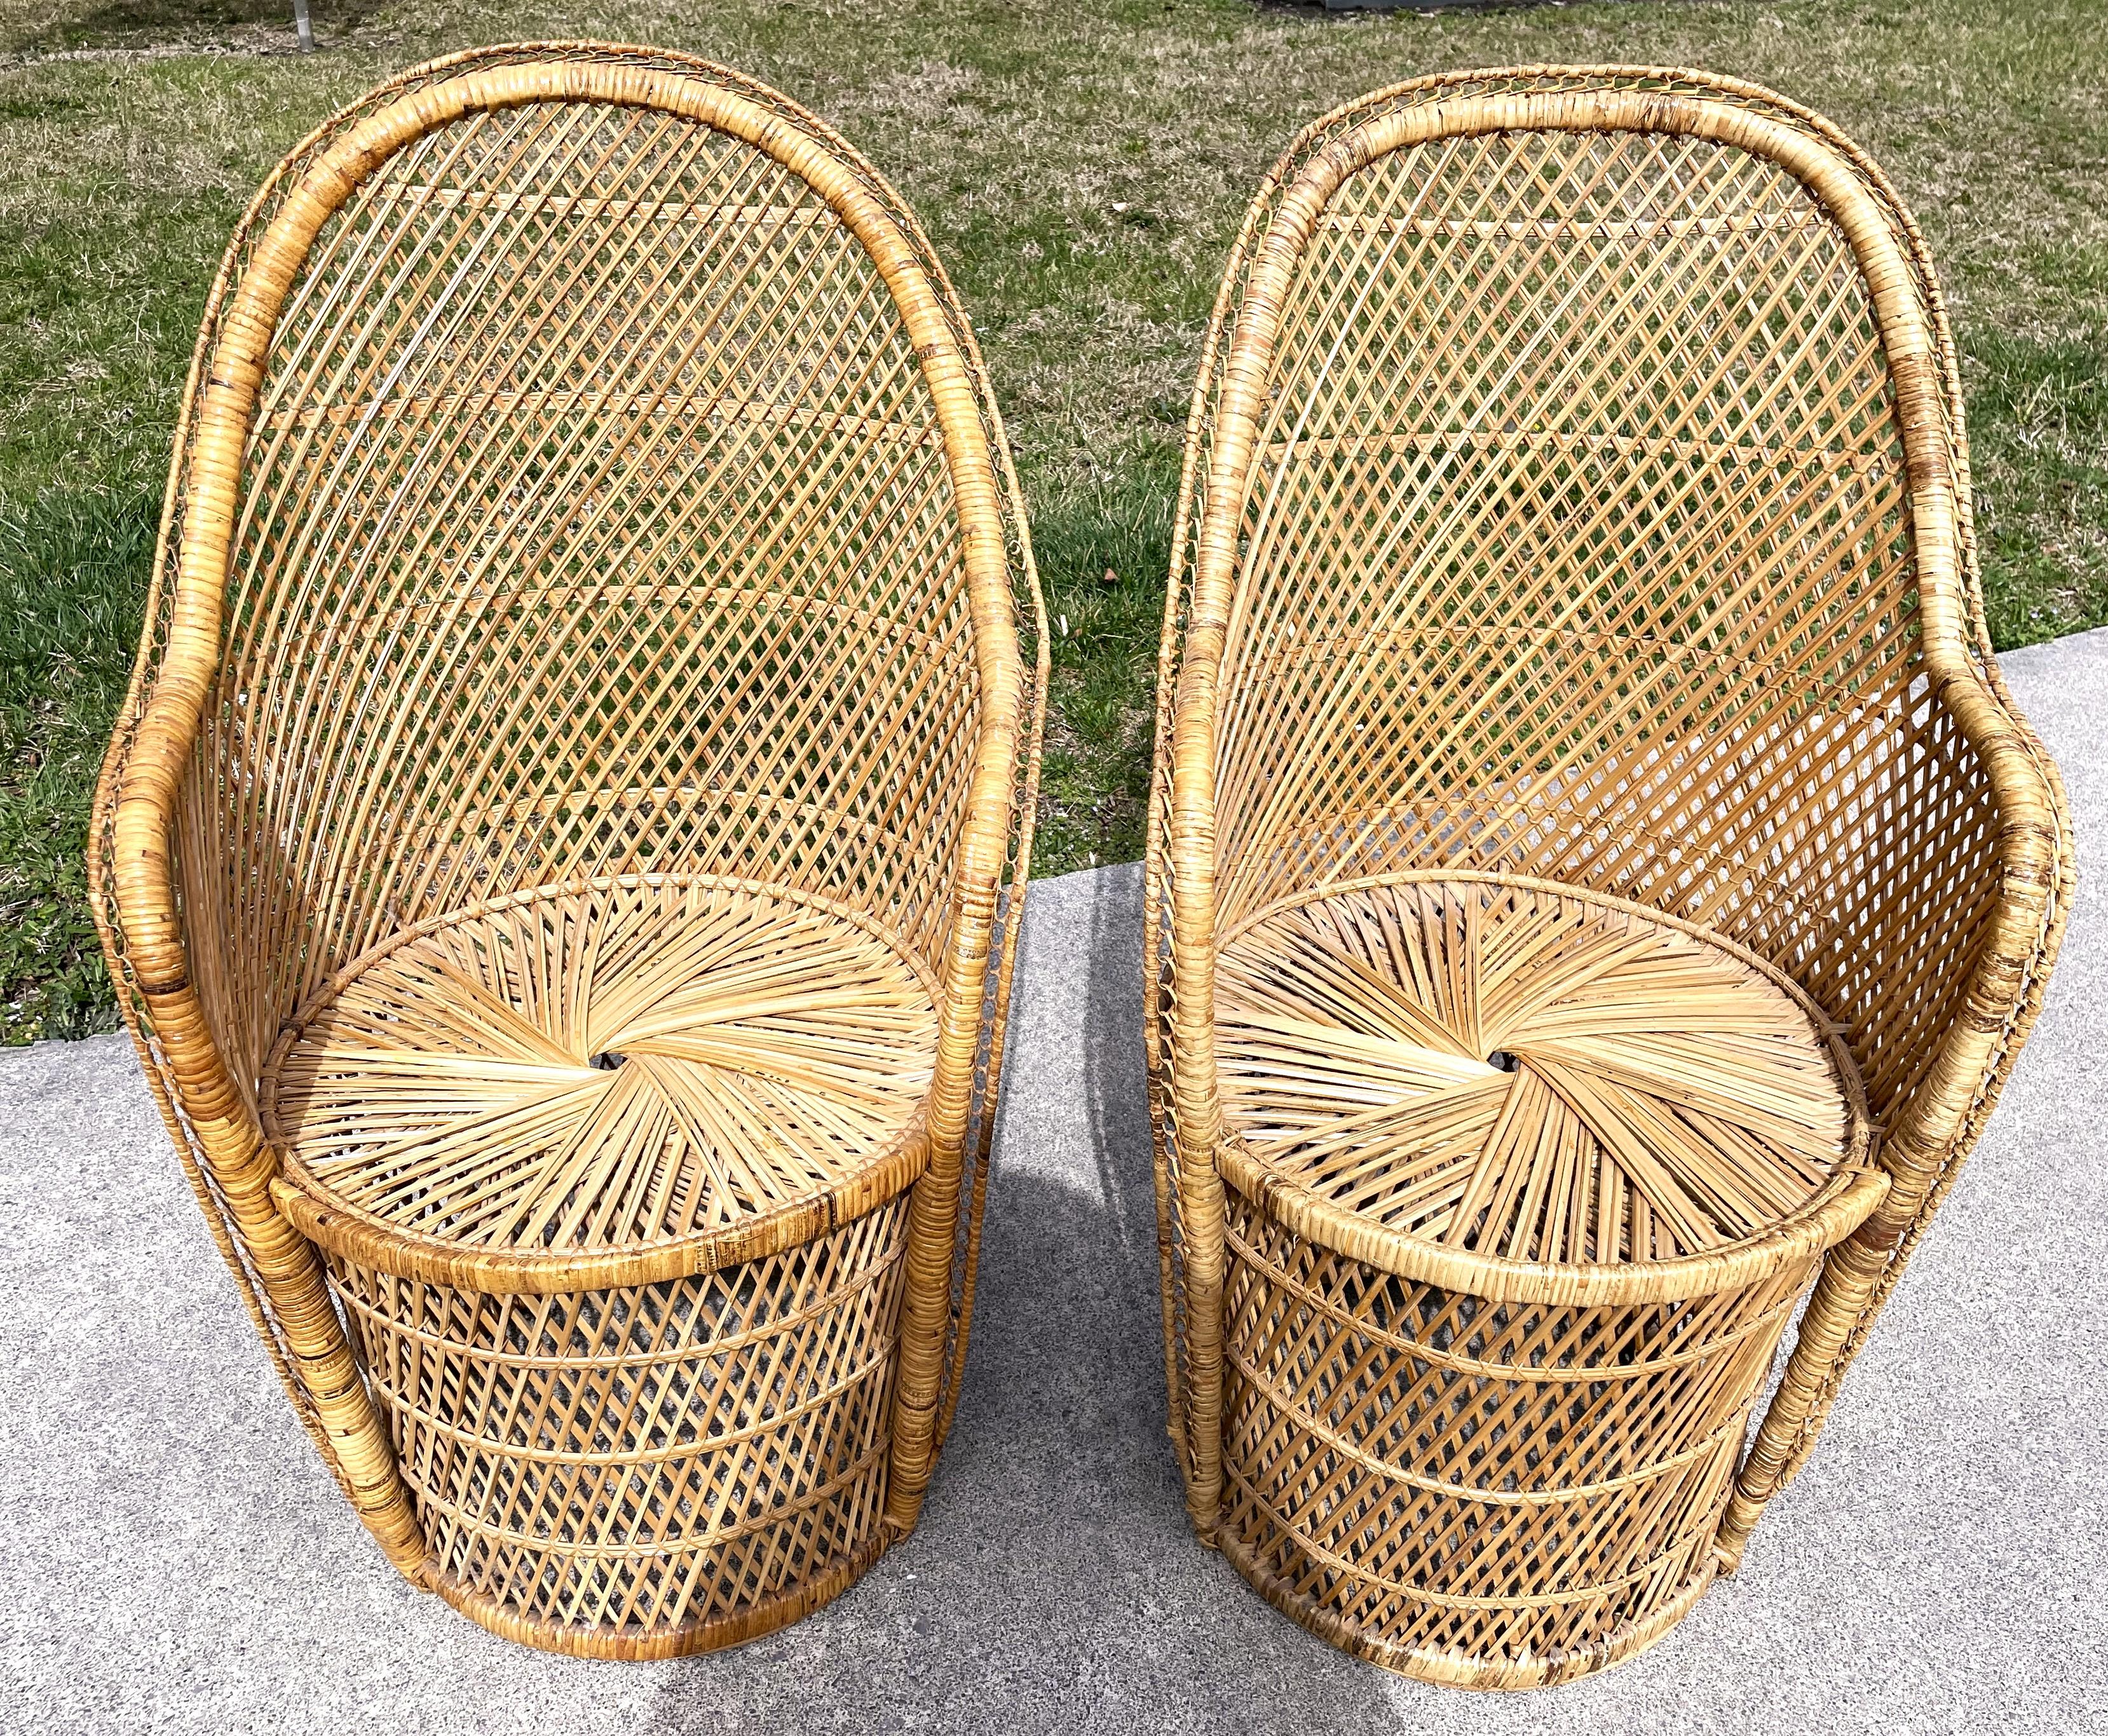 Il s'agit d'une magnifique paire de chaises en rotin boho chic avec de l'osier naturel tressé dans un motif conventionnel de hachures croisées. Les fonds des chaises sont ronds comme des tonneaux et les dessus ont la forme d'un tonneau évasé. Je